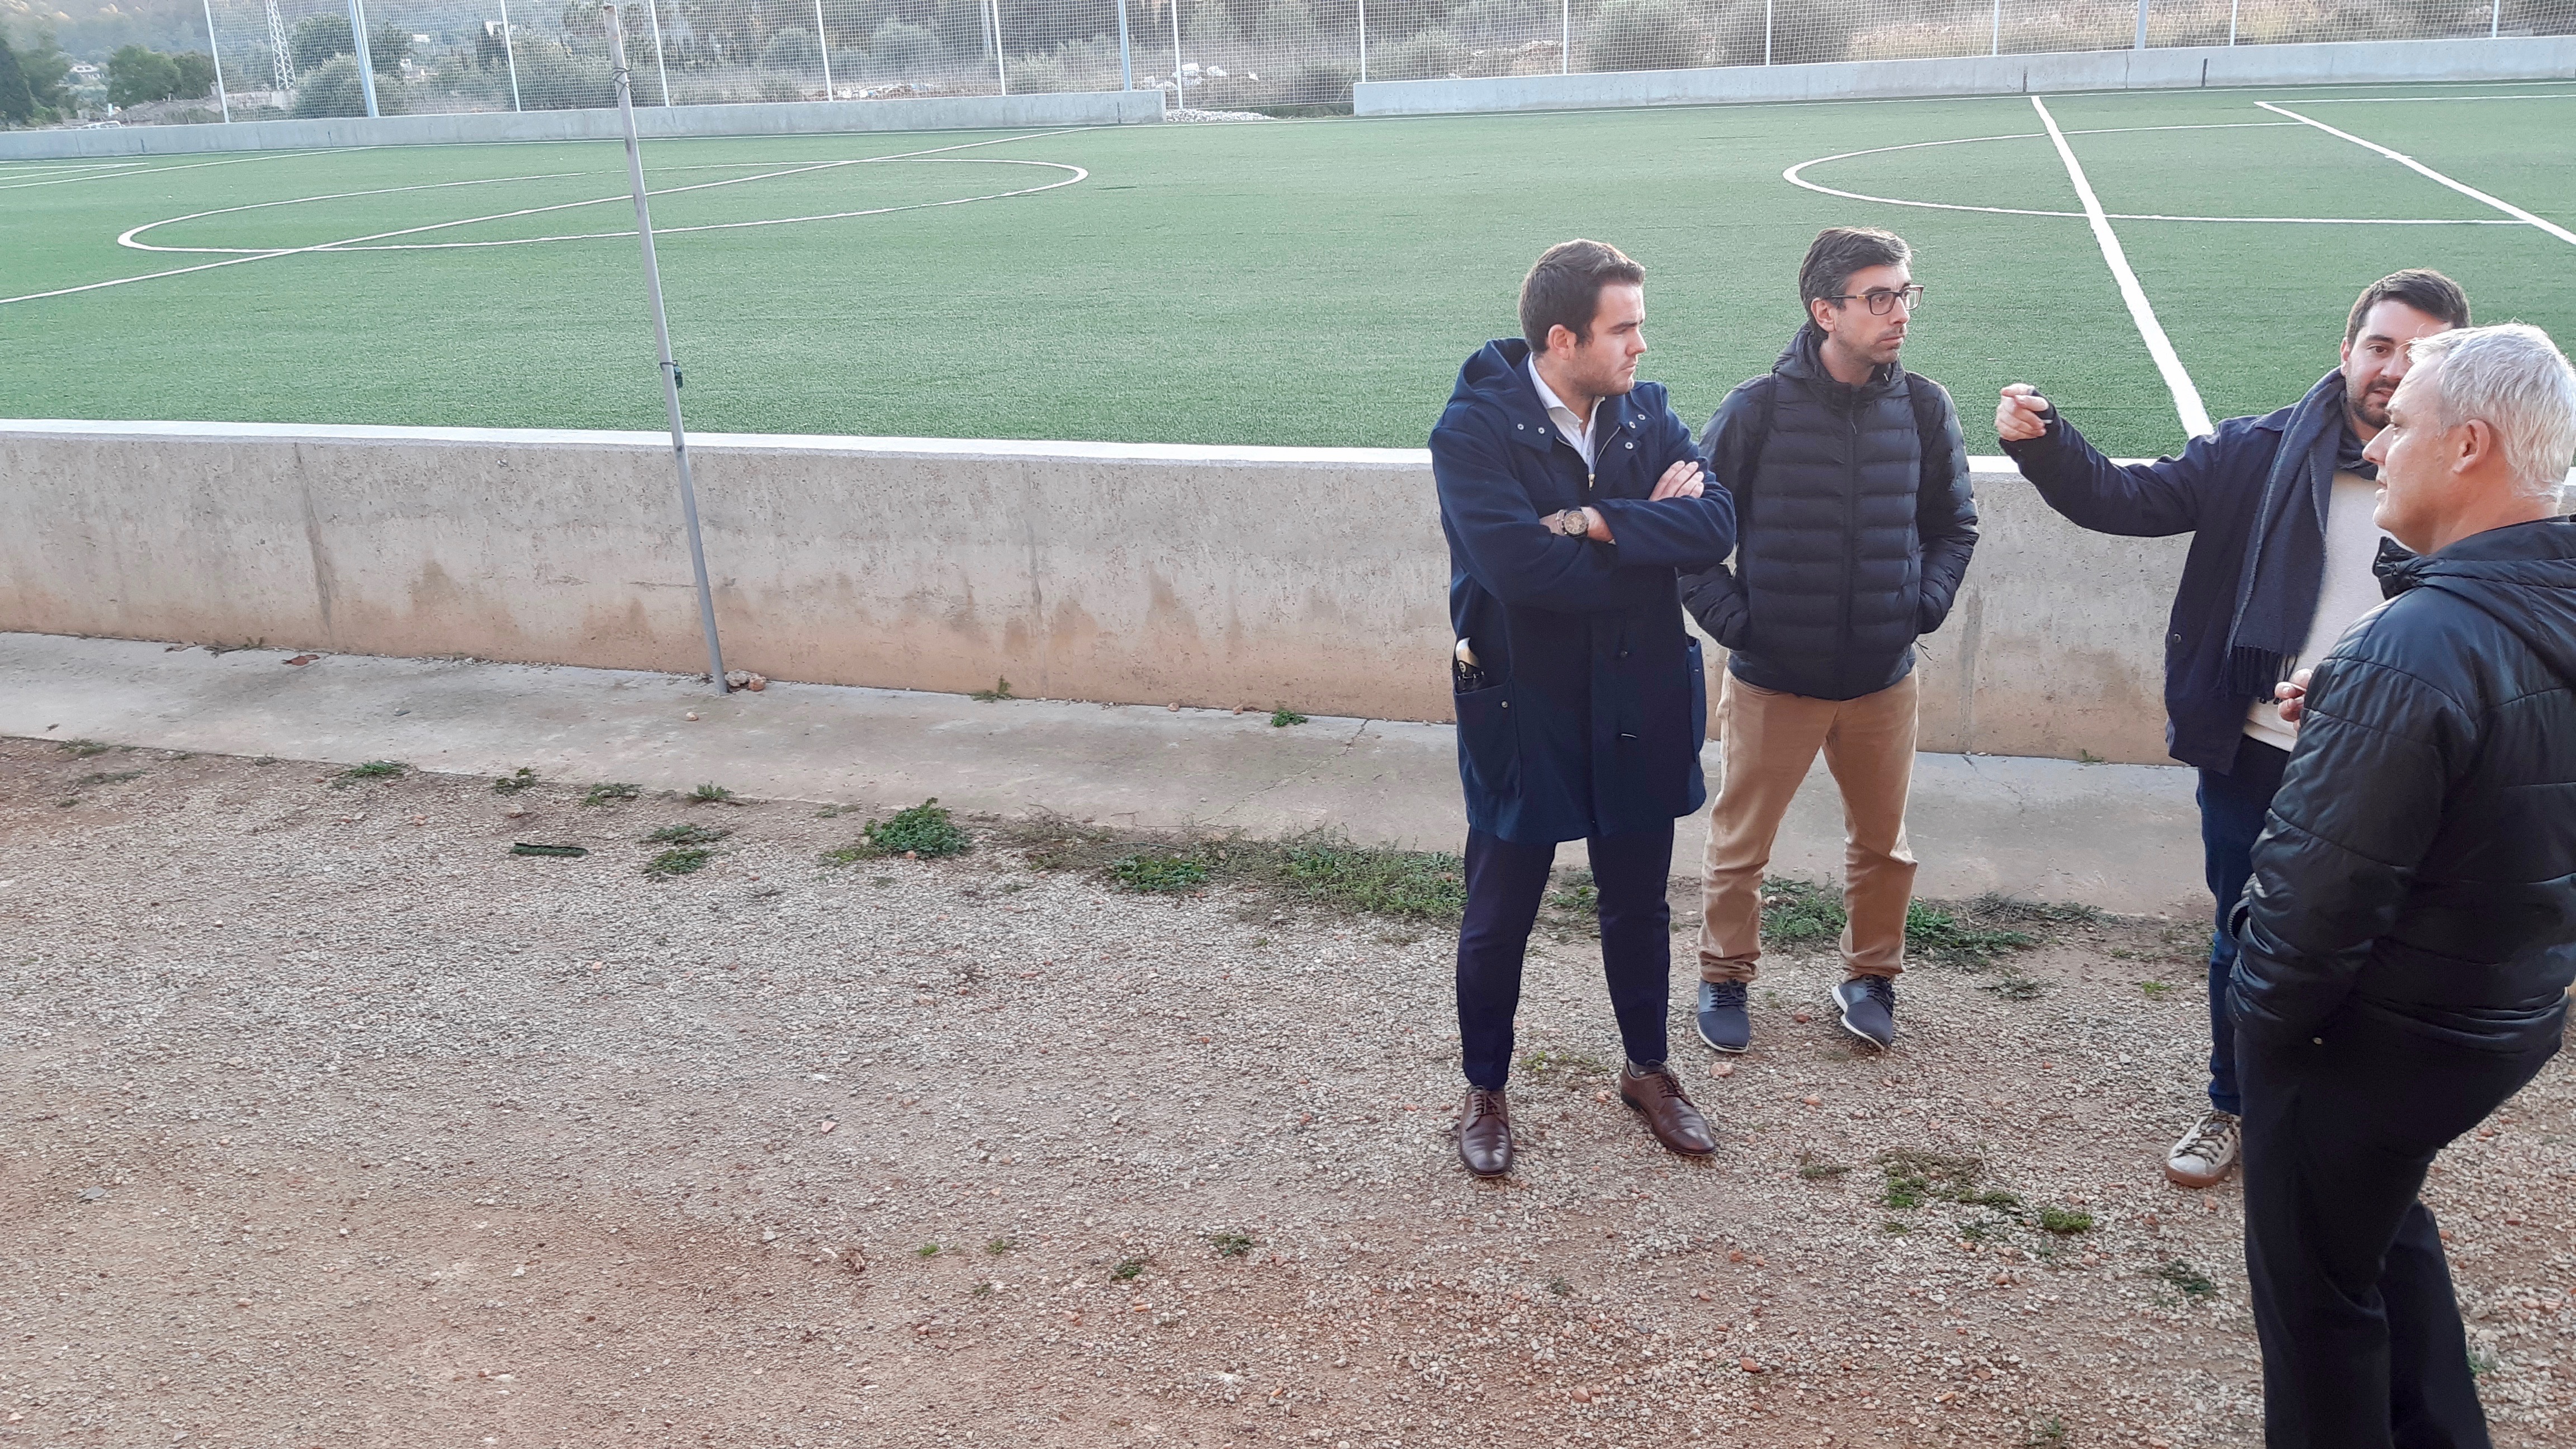 L’Ajuntament d’Alaró ha sol·licitat un ajut a Cooperació Local per a la millora de l’accessibilitat i seguretat del camp de futbol 7 del poliesportiu municipal.